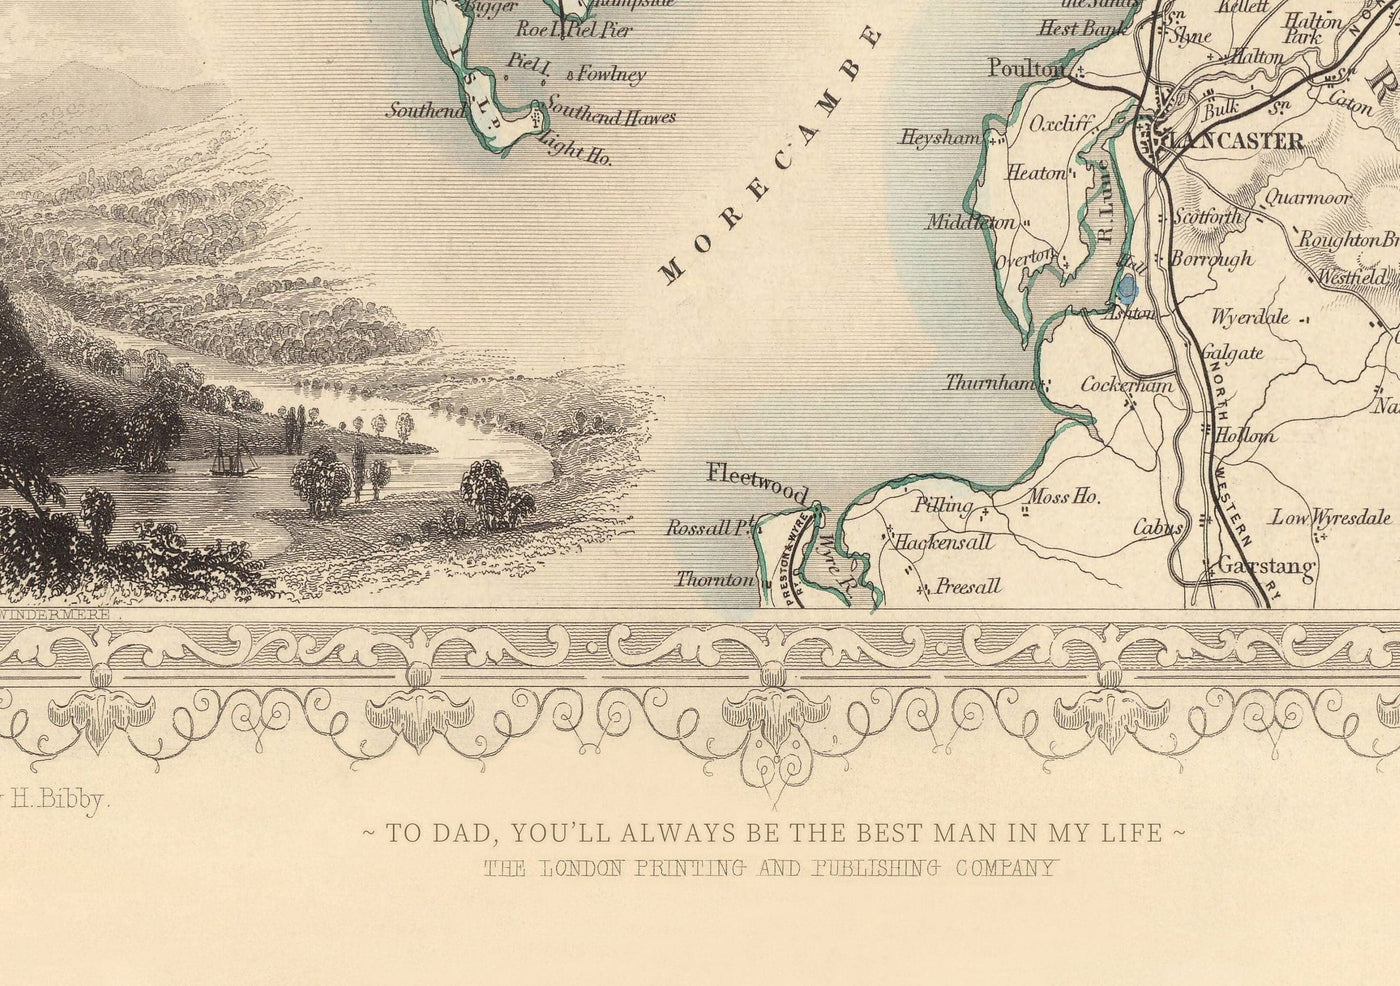 Vieille carte monochrome de Plymouth en 1851 par Tallis, Rapkin - Stonehouse, Devonport